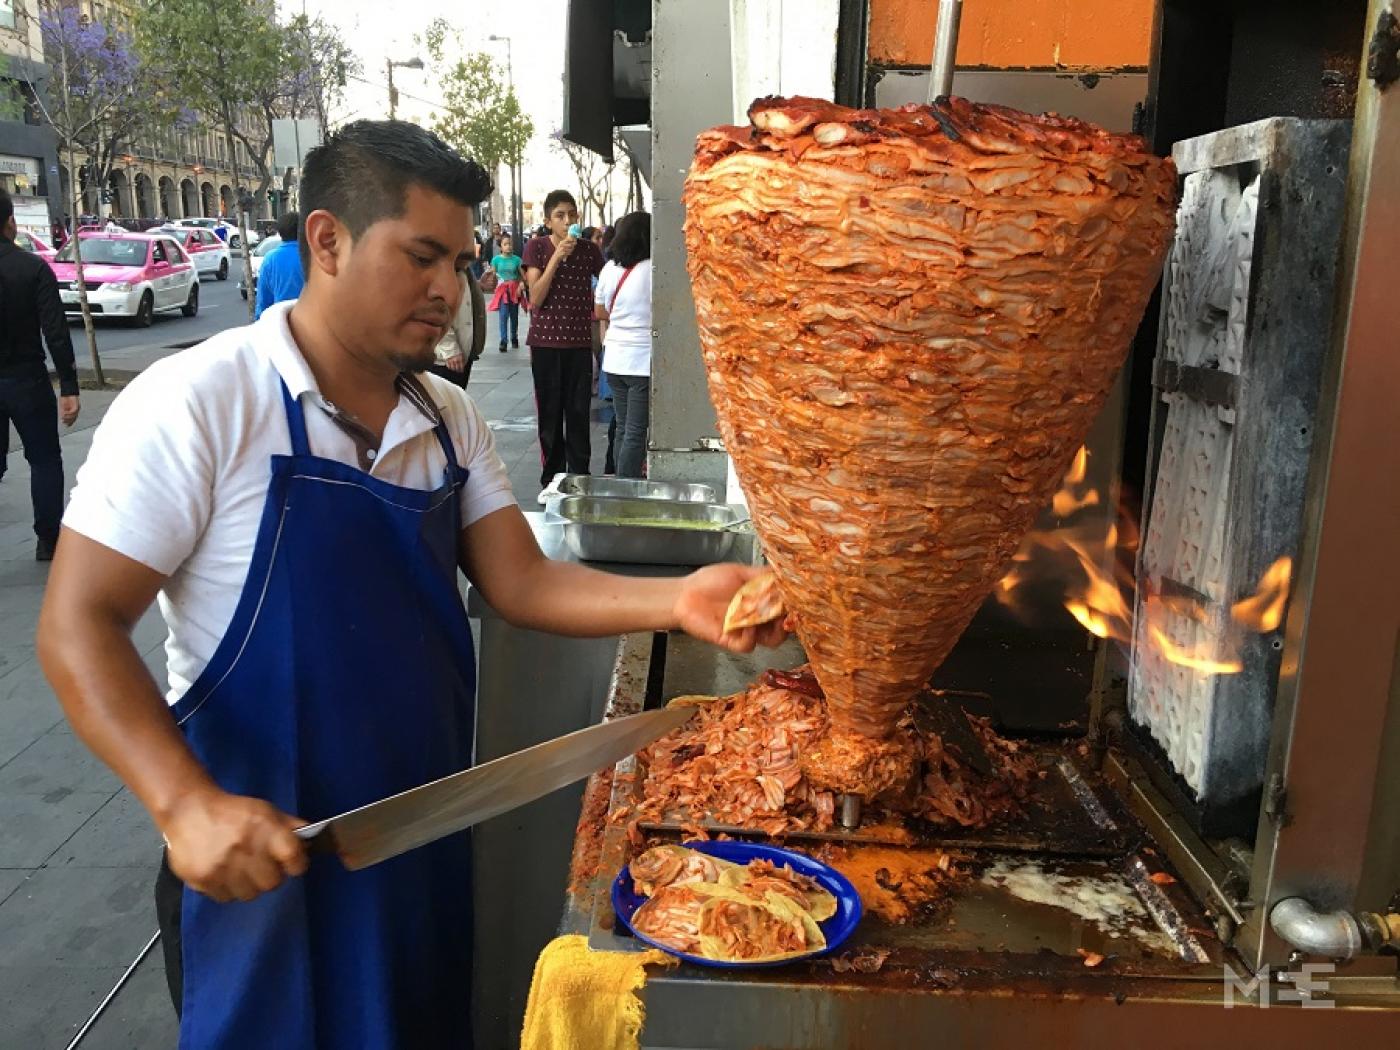 Seorang pedagang di Mexico City memotong daging untuk taco al pastor, hidangan yang diyakini berasal dari shawarma kebab, diperkenalkan oleh imigran Lebanon pada awal abad ke-20 (MEE/Alex Shams)